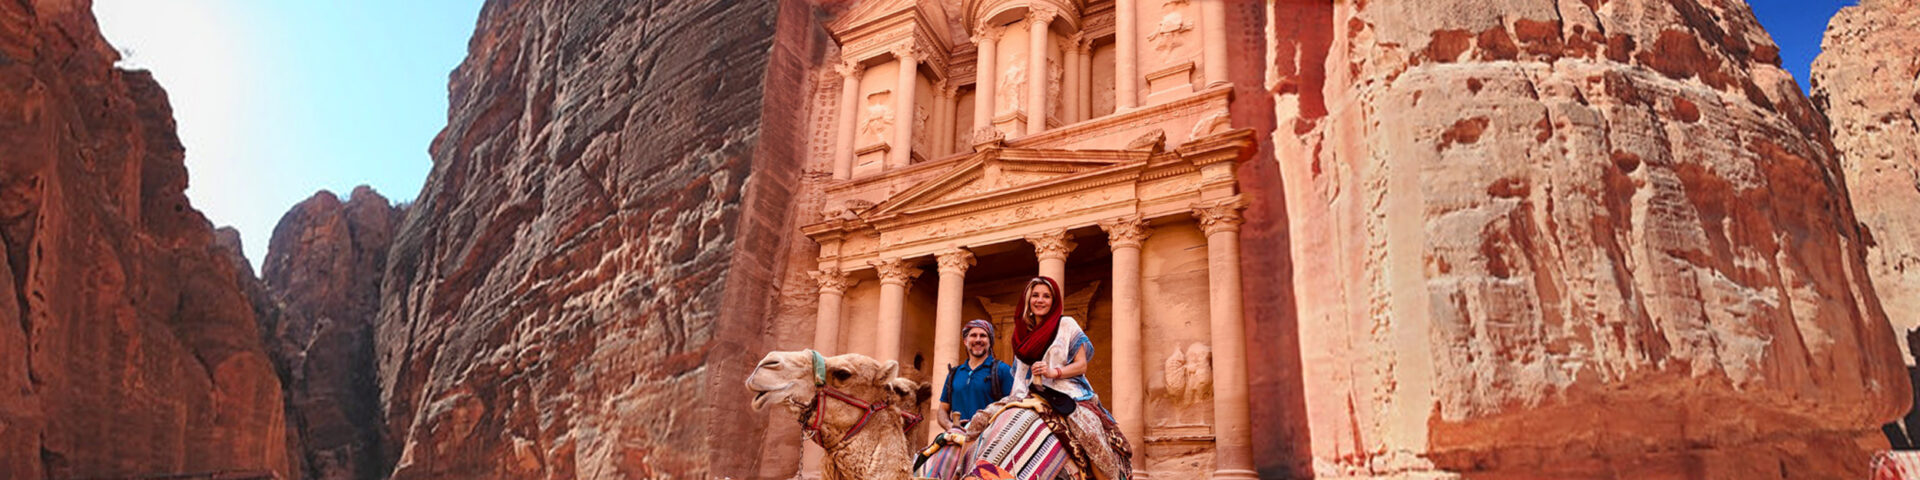 Daniel and Megan riding Camels in Petra Jordan